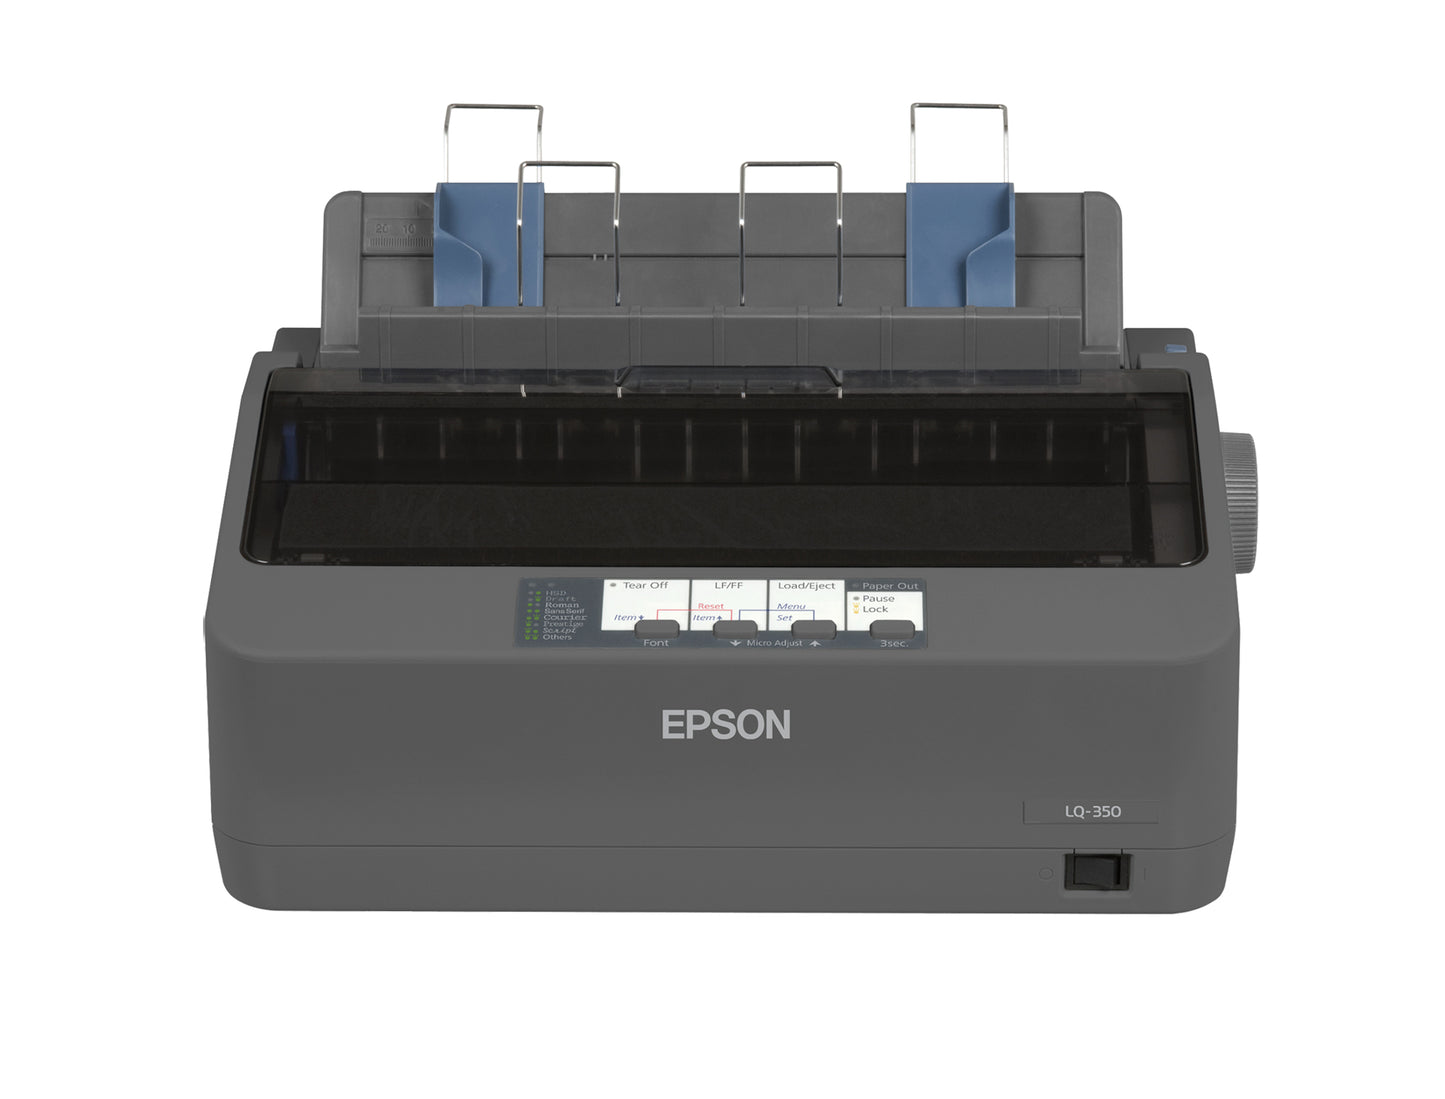 Epson LQ-350, 347 cps, 360 x 180 DPI, 260 cps, 86 cps, 10 cpi (indice dei prezzi al consumo), 4 copie